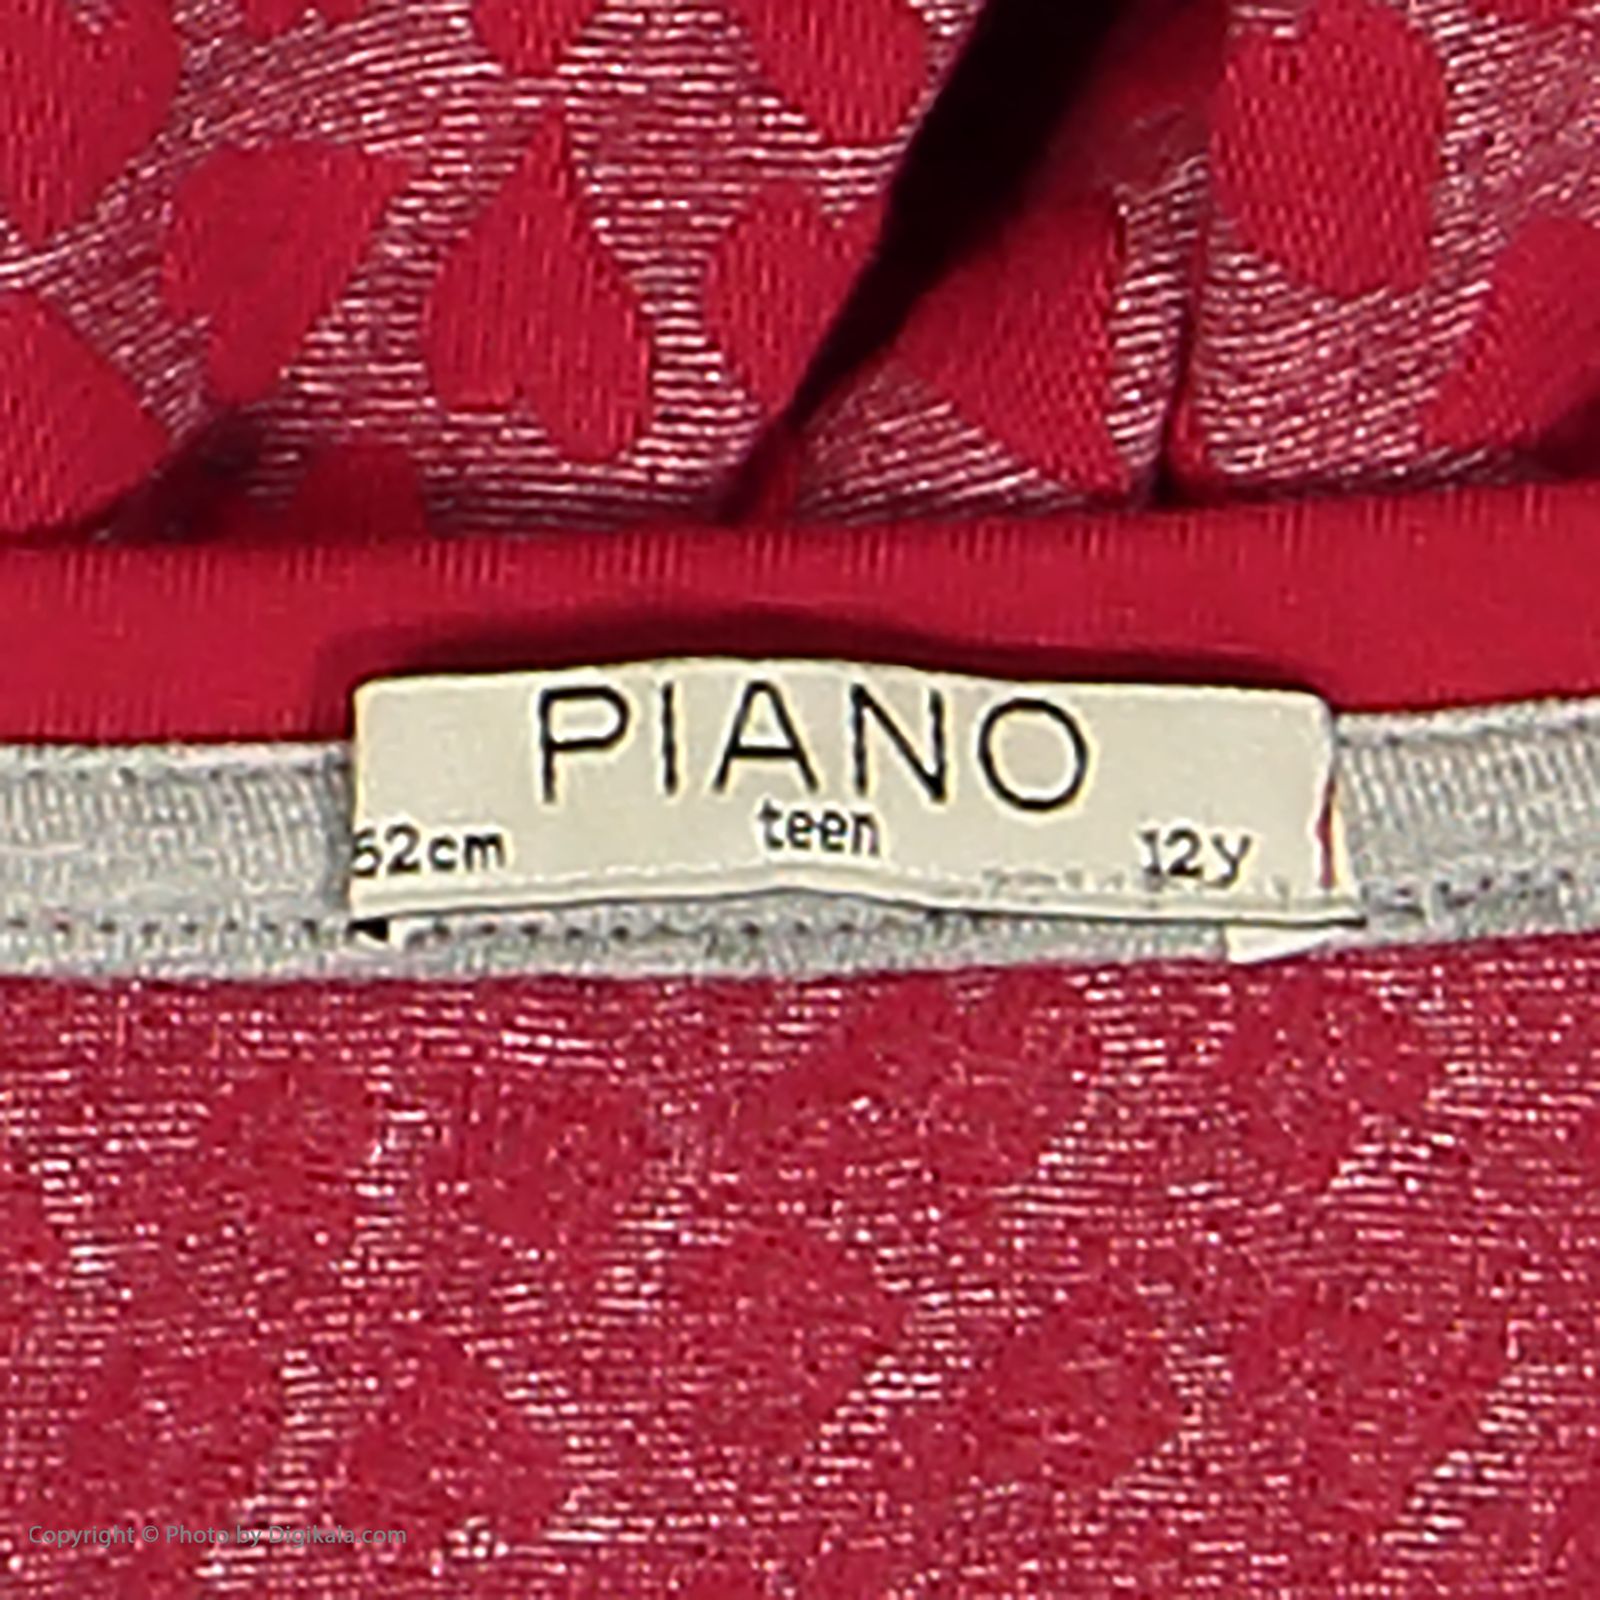 تی شرت دخترانه پیانو مدل 01816-72 -  - 5